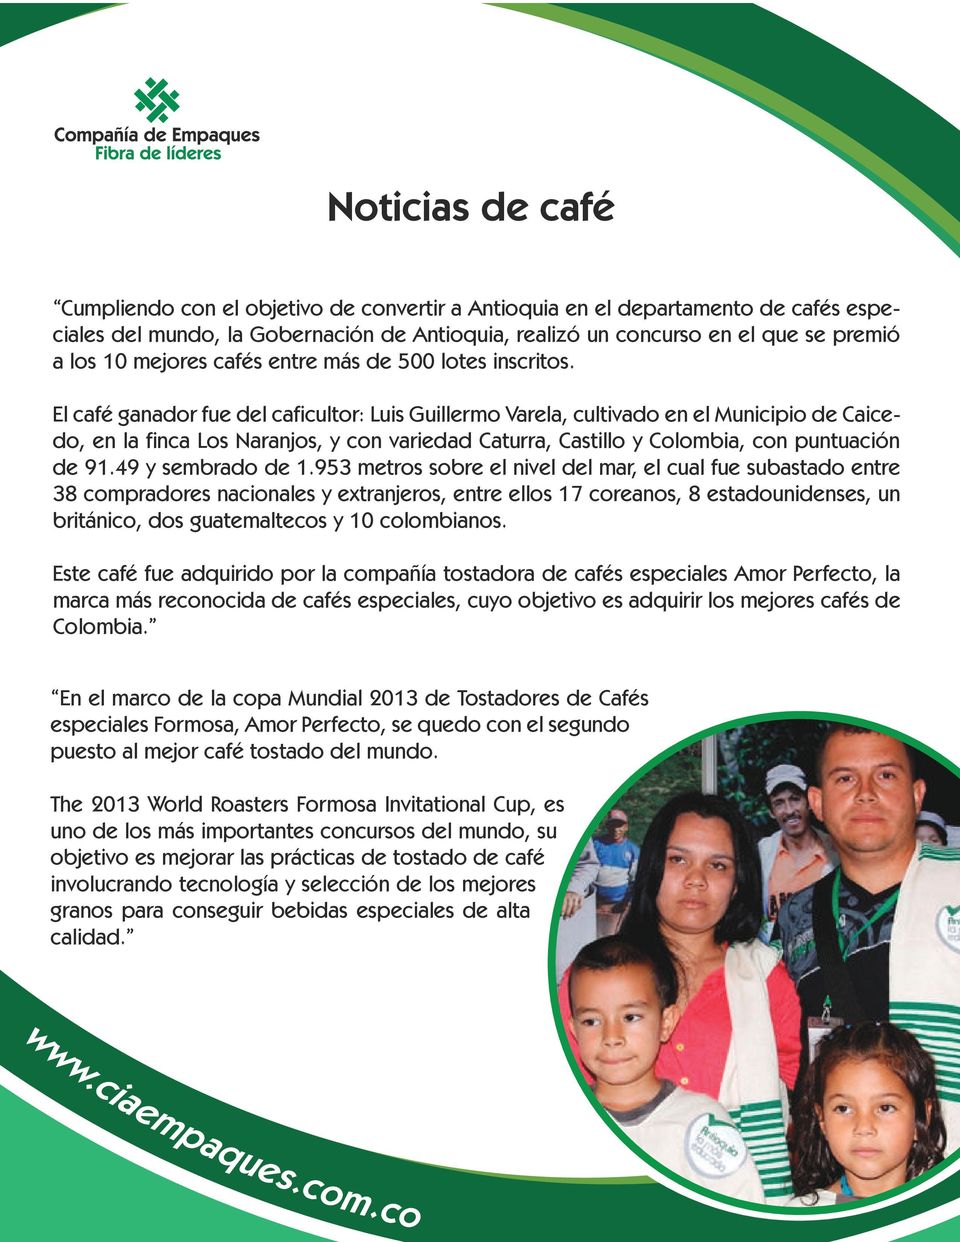 El café ganador fue del caficultor: Luis Guillermo Varela, cultivado en el Municipio de Caicedo, en la finca Los Naranjos, y con variedad Caturra, Castillo y Colombia, con puntuación de 91.